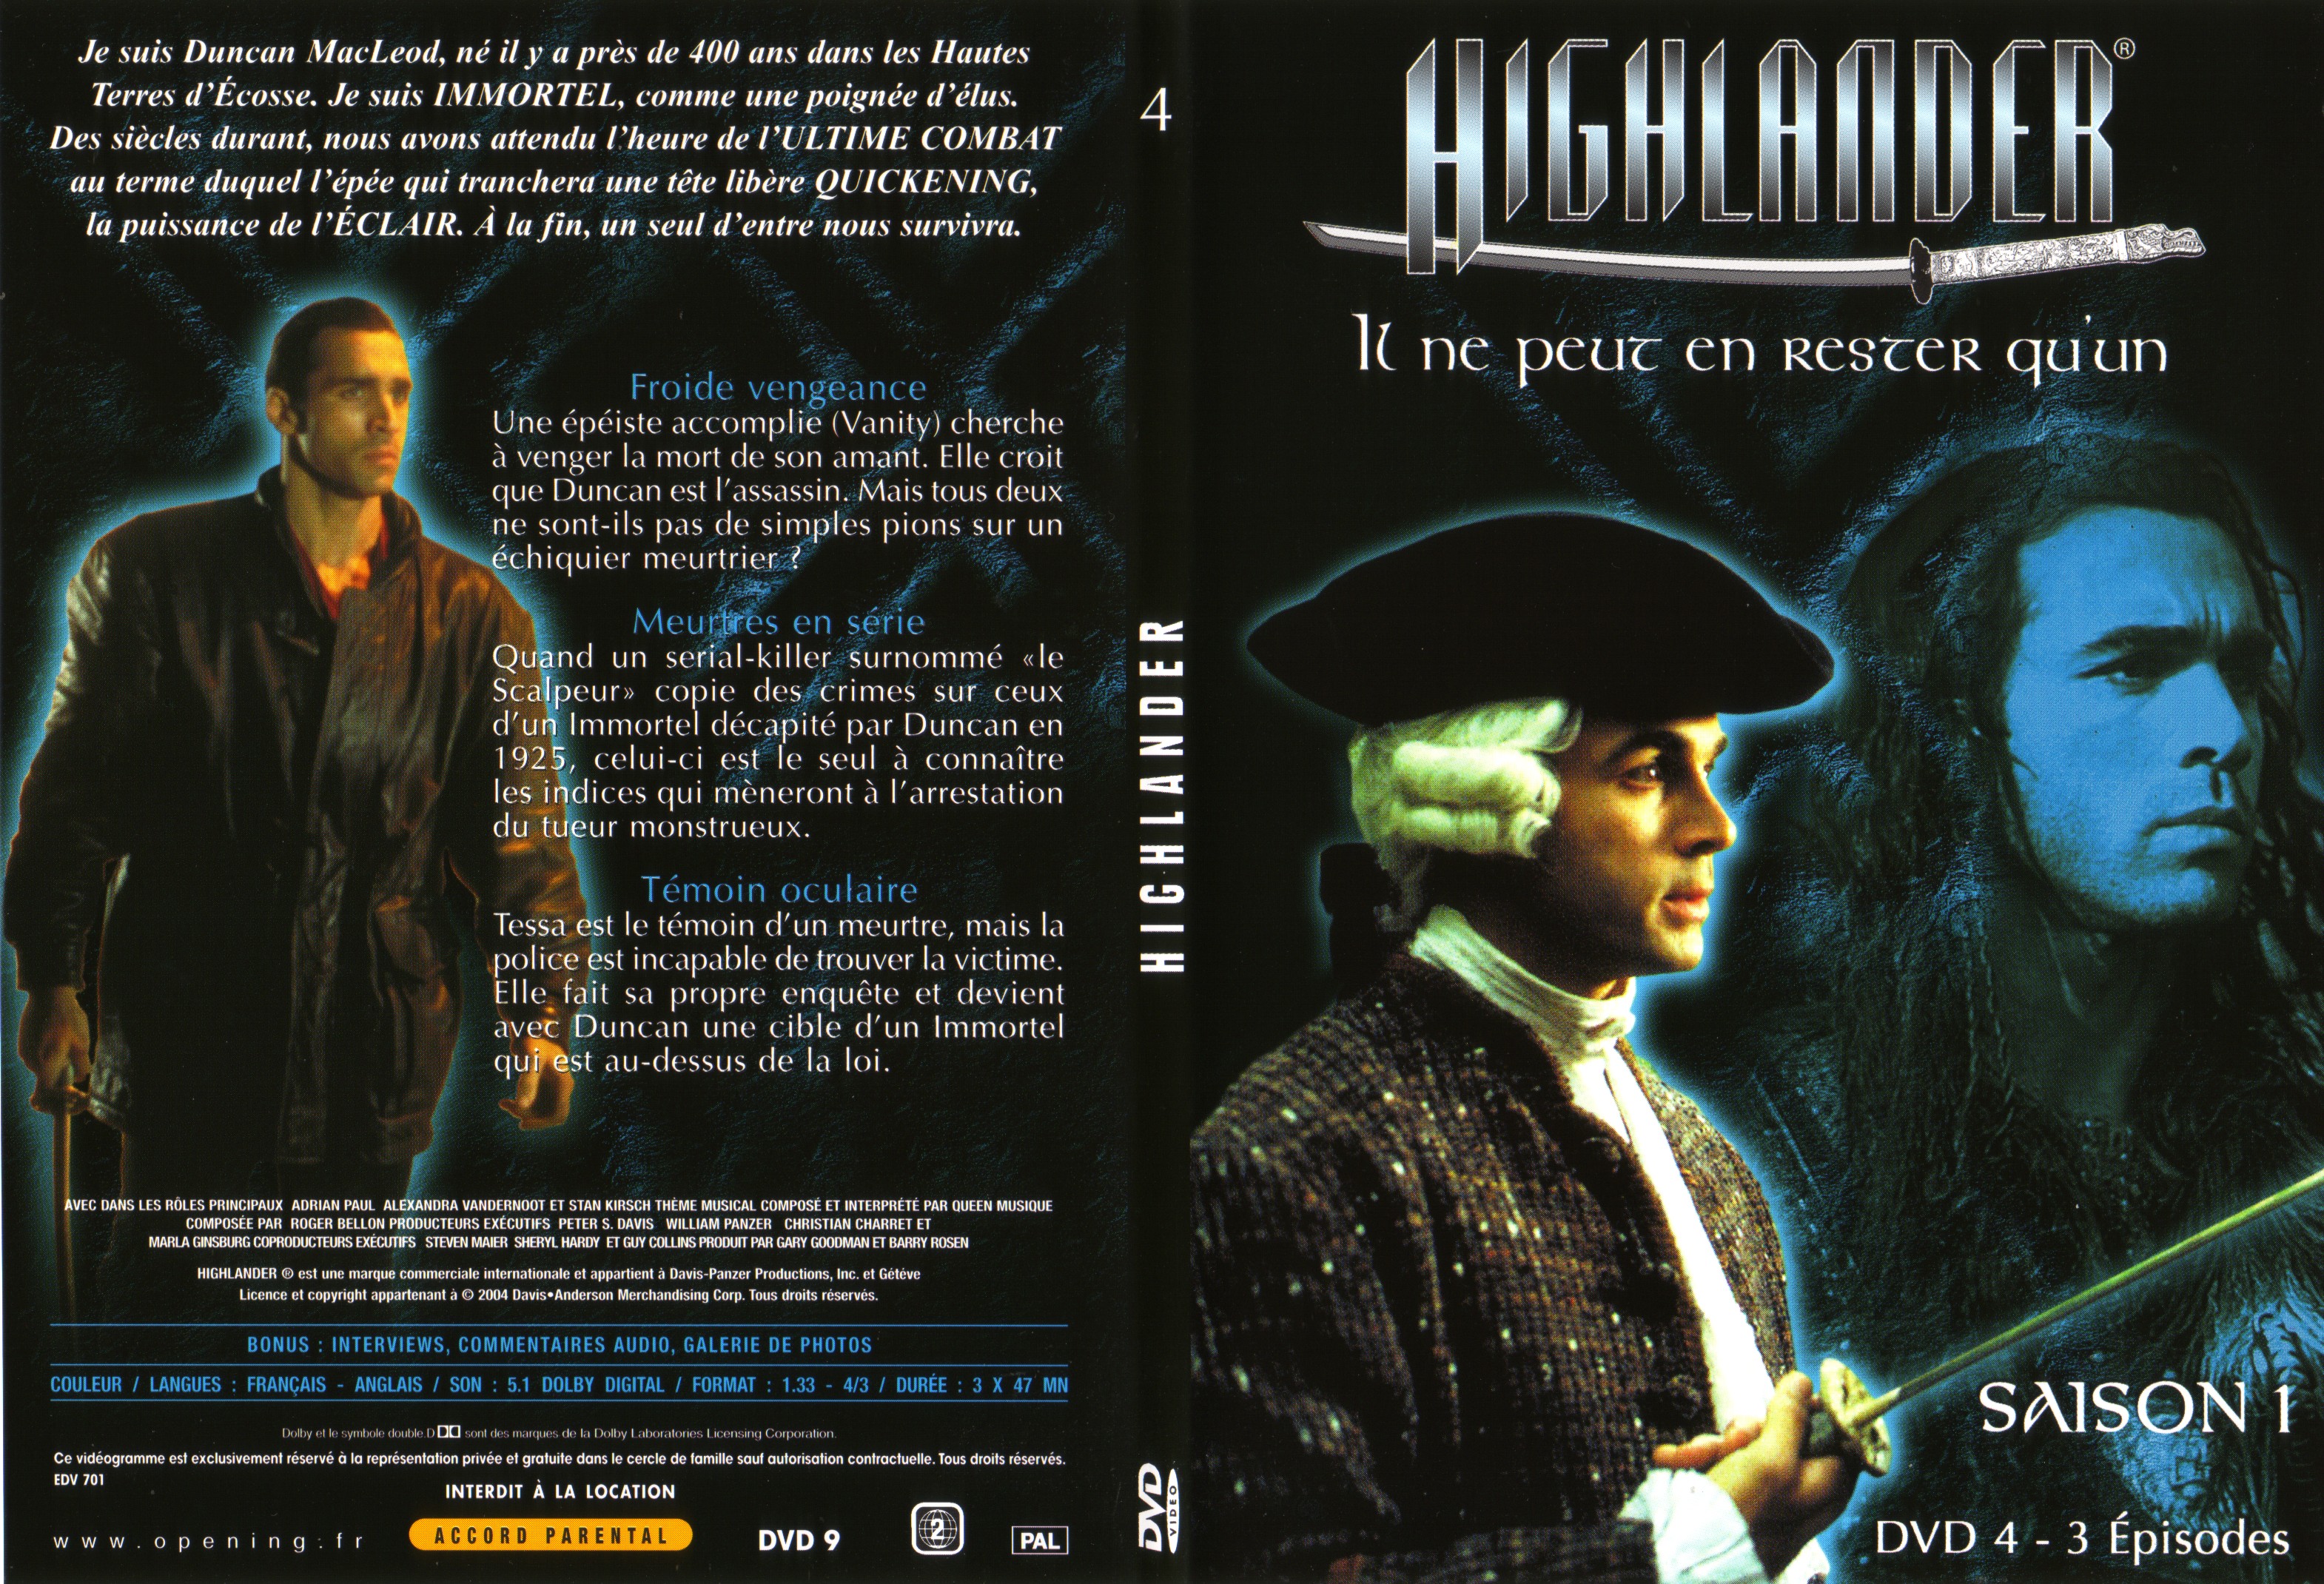 Jaquette DVD Highlander saison 1 DVD 4